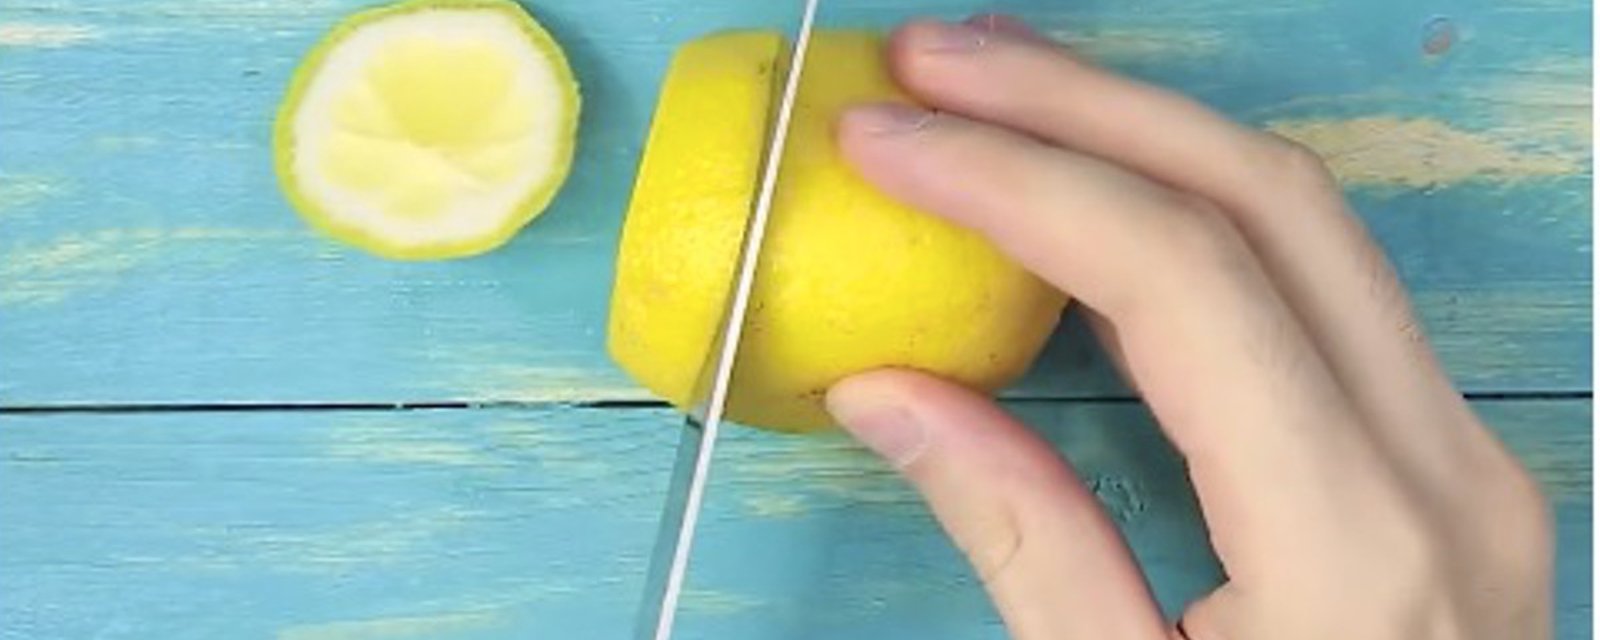 Conservez toujours vos citrons frais, une fois qu'il sont coupés! C'est cool comme astuce! 